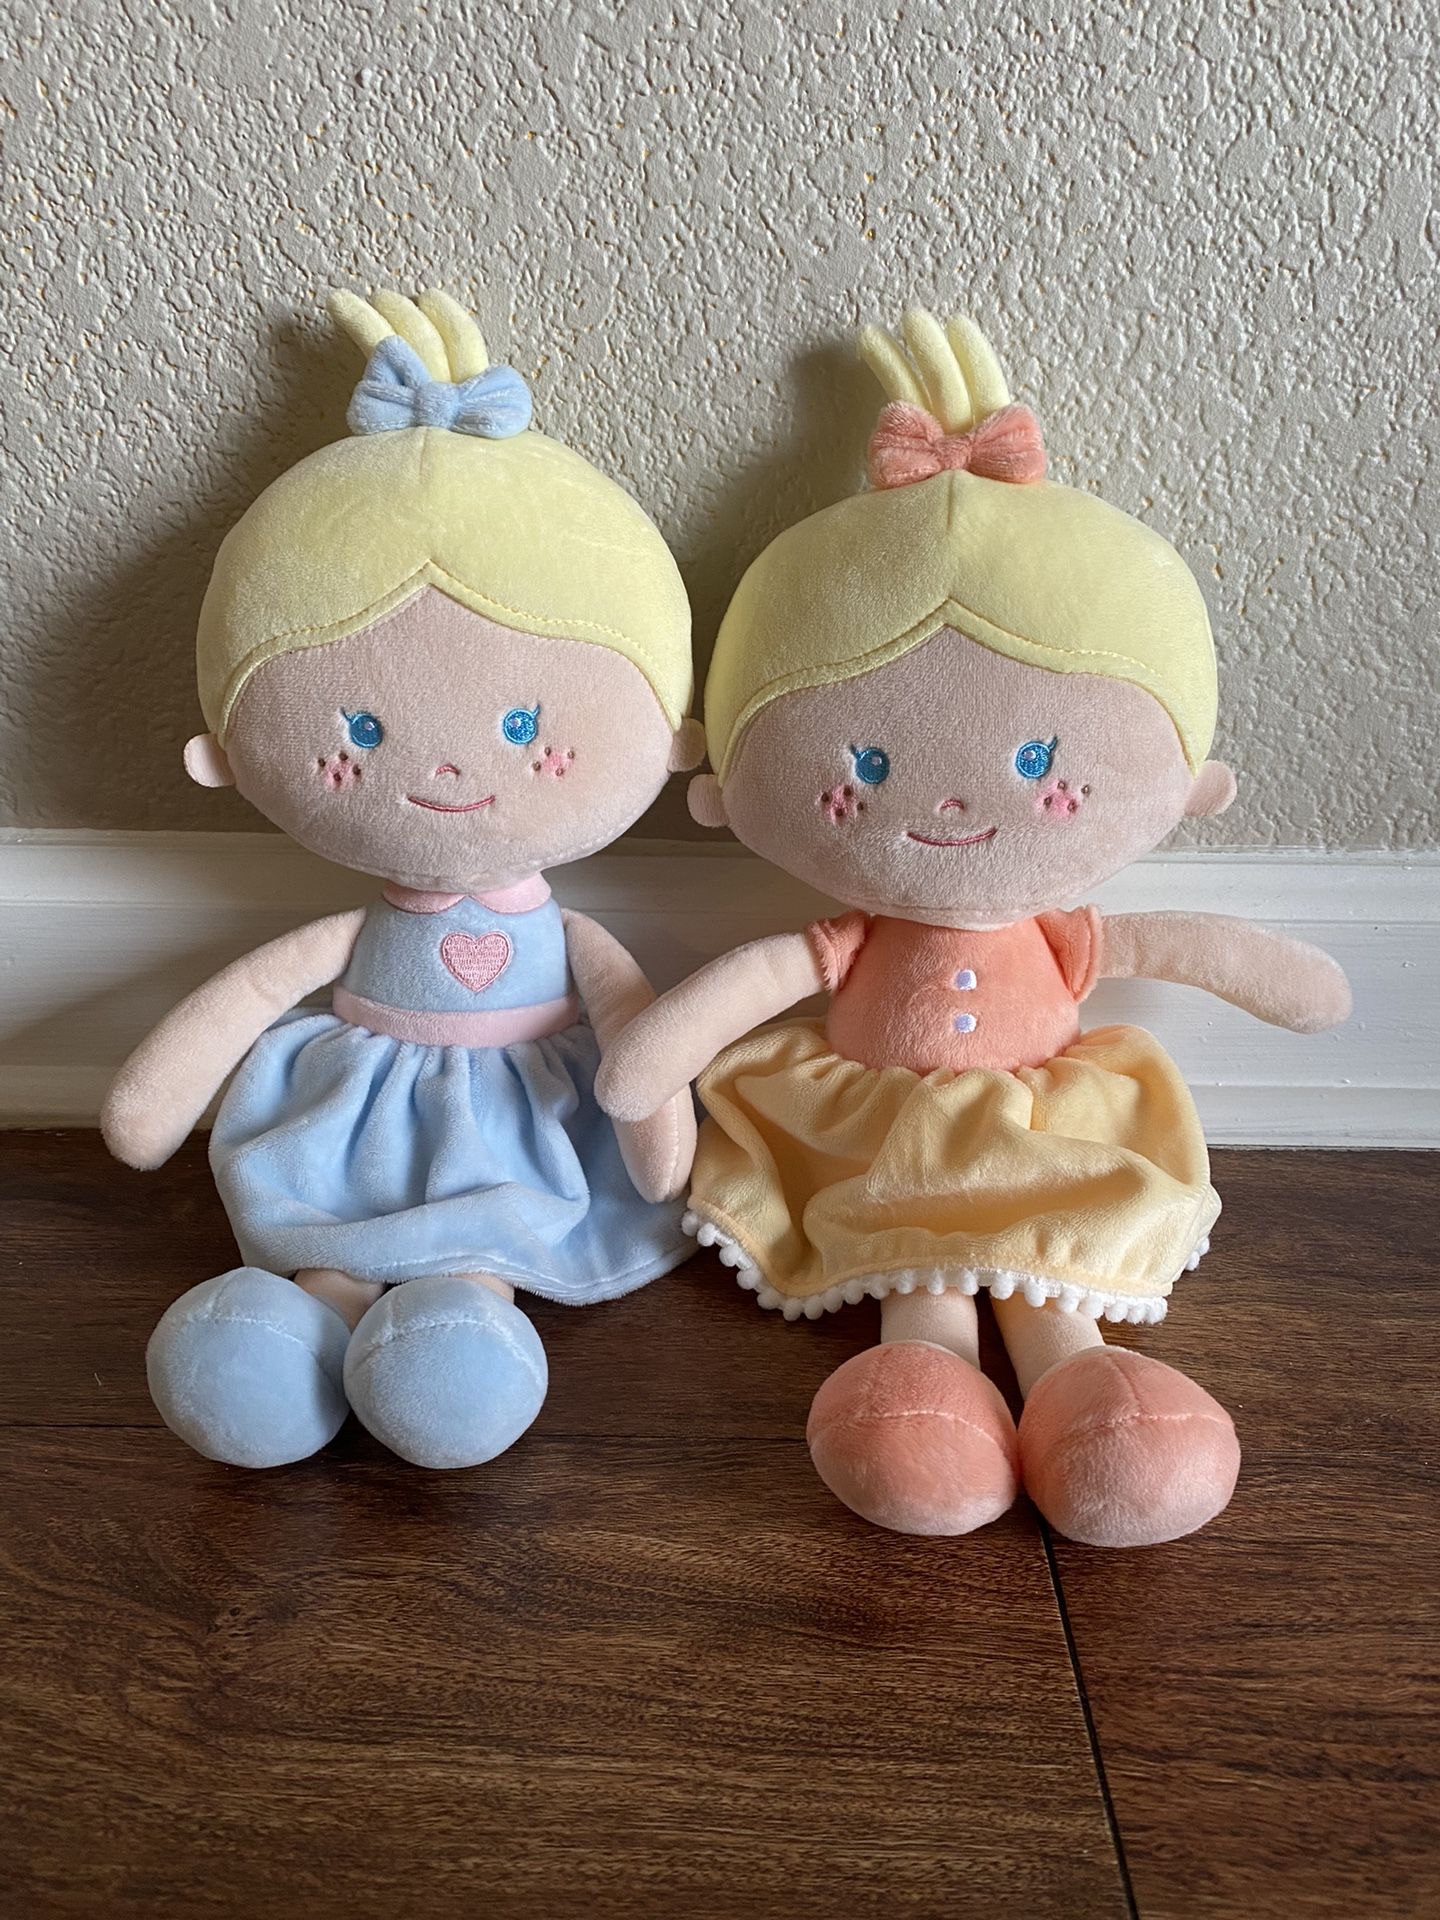 Soft Baby Dolls